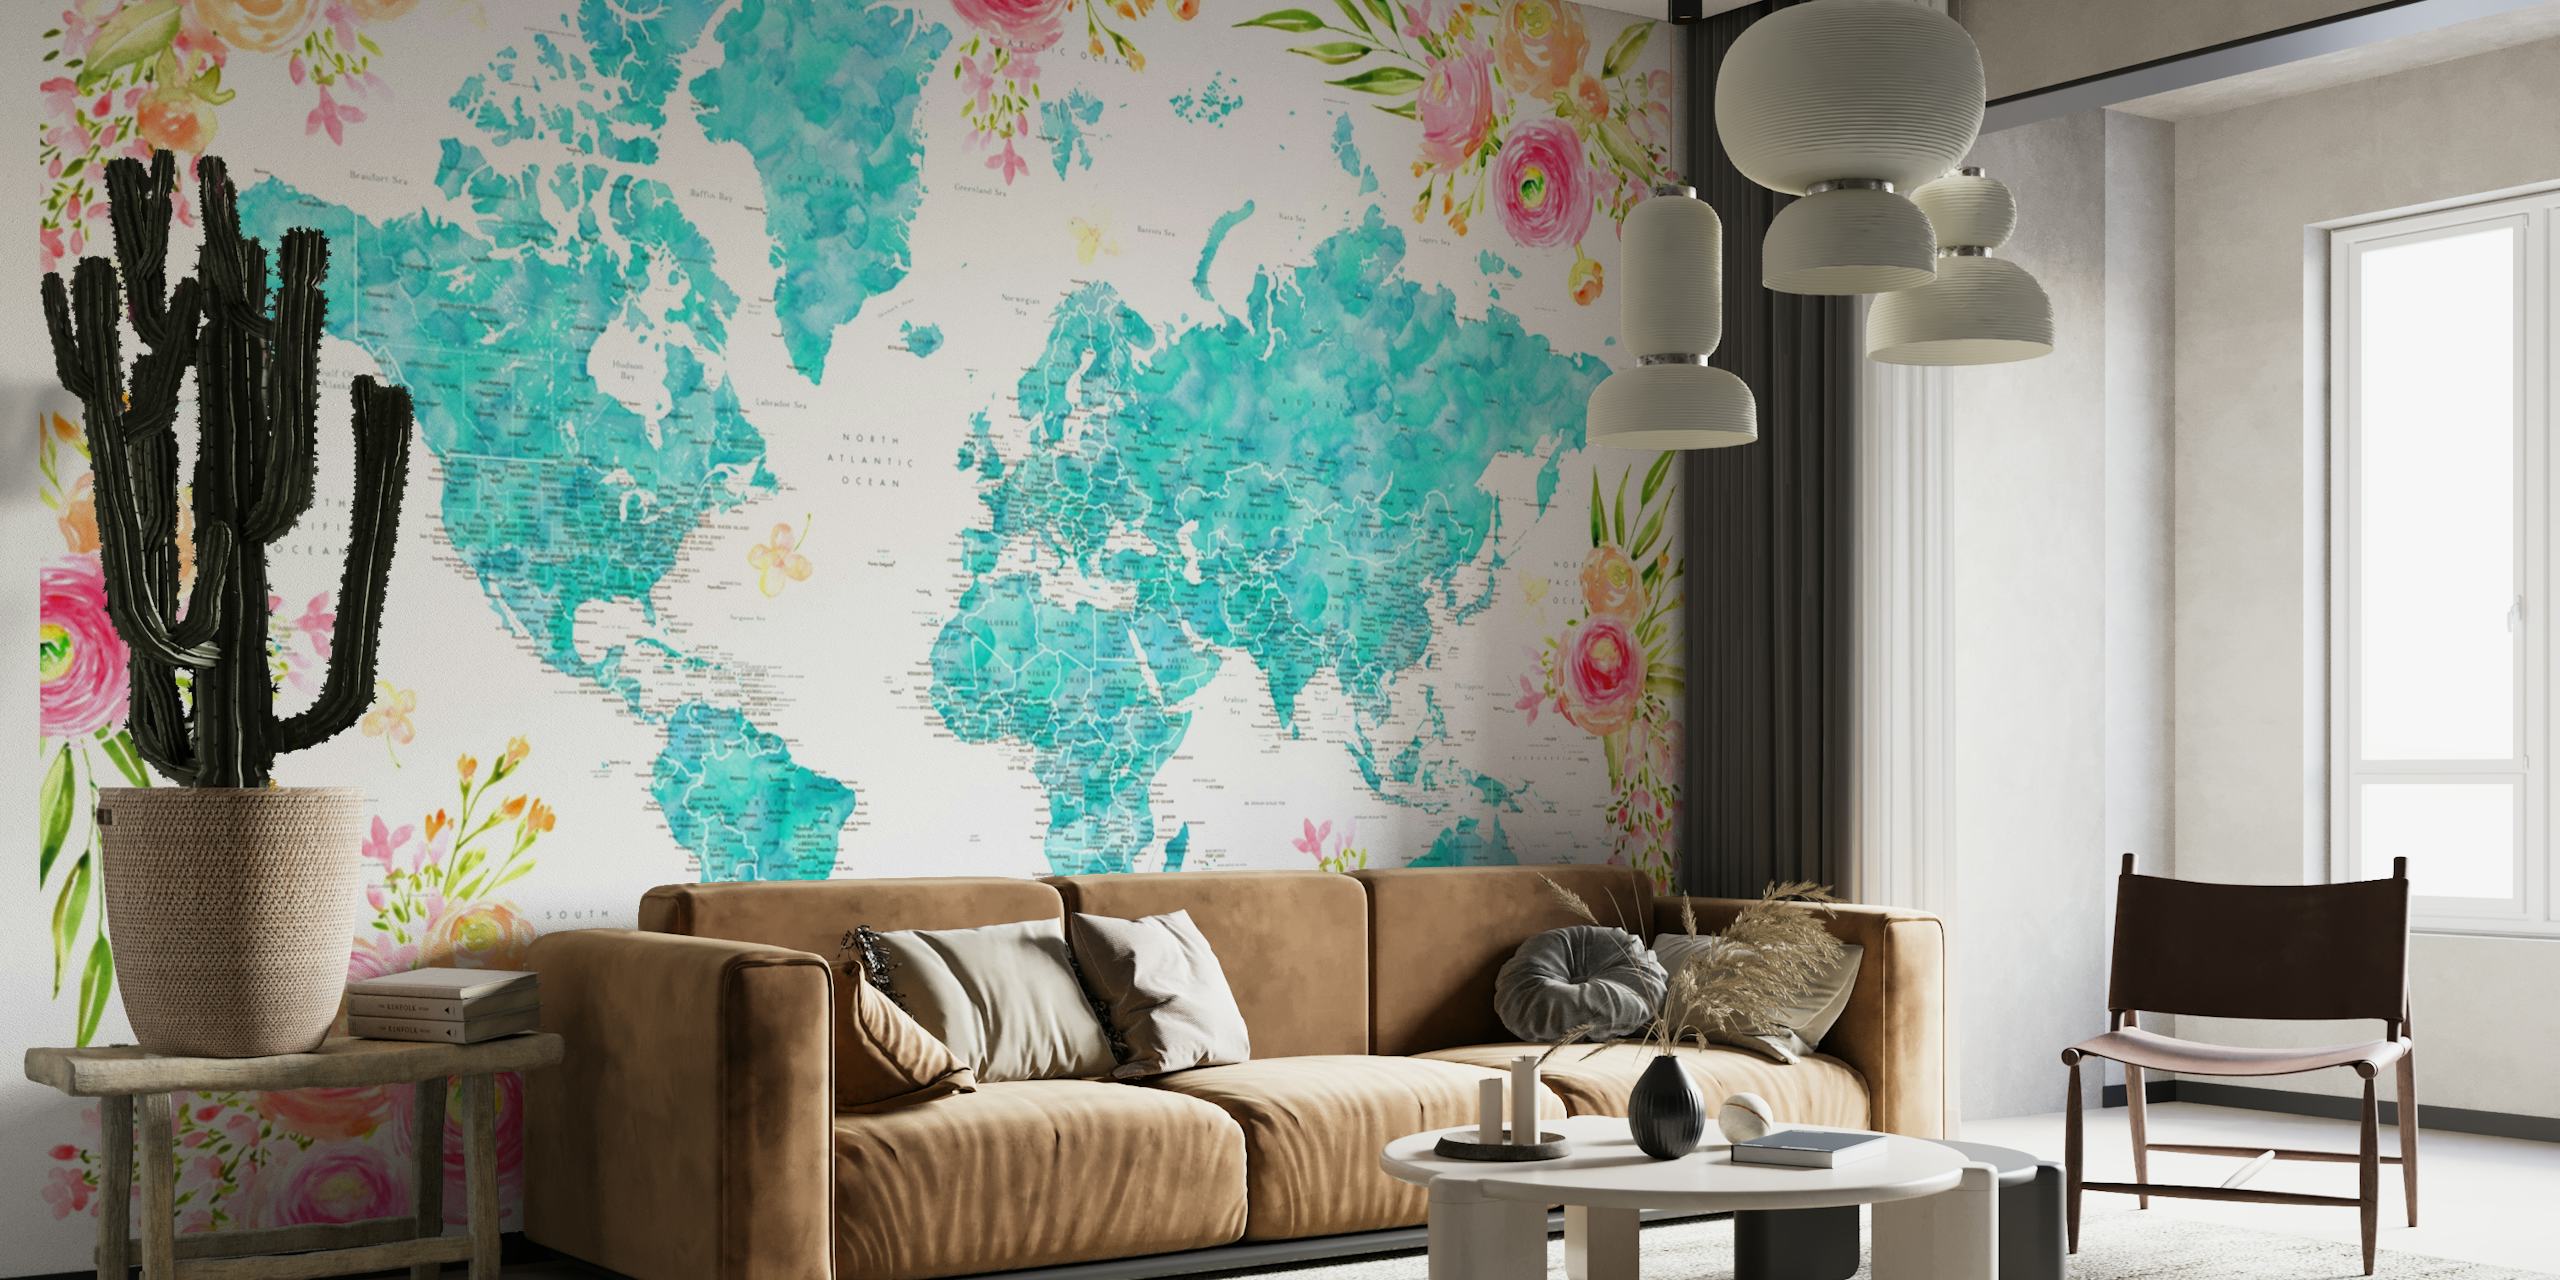 Gedetailleerde wereldkaart met bloemenranden in turquoise en pasteltinten op een fotobehang.